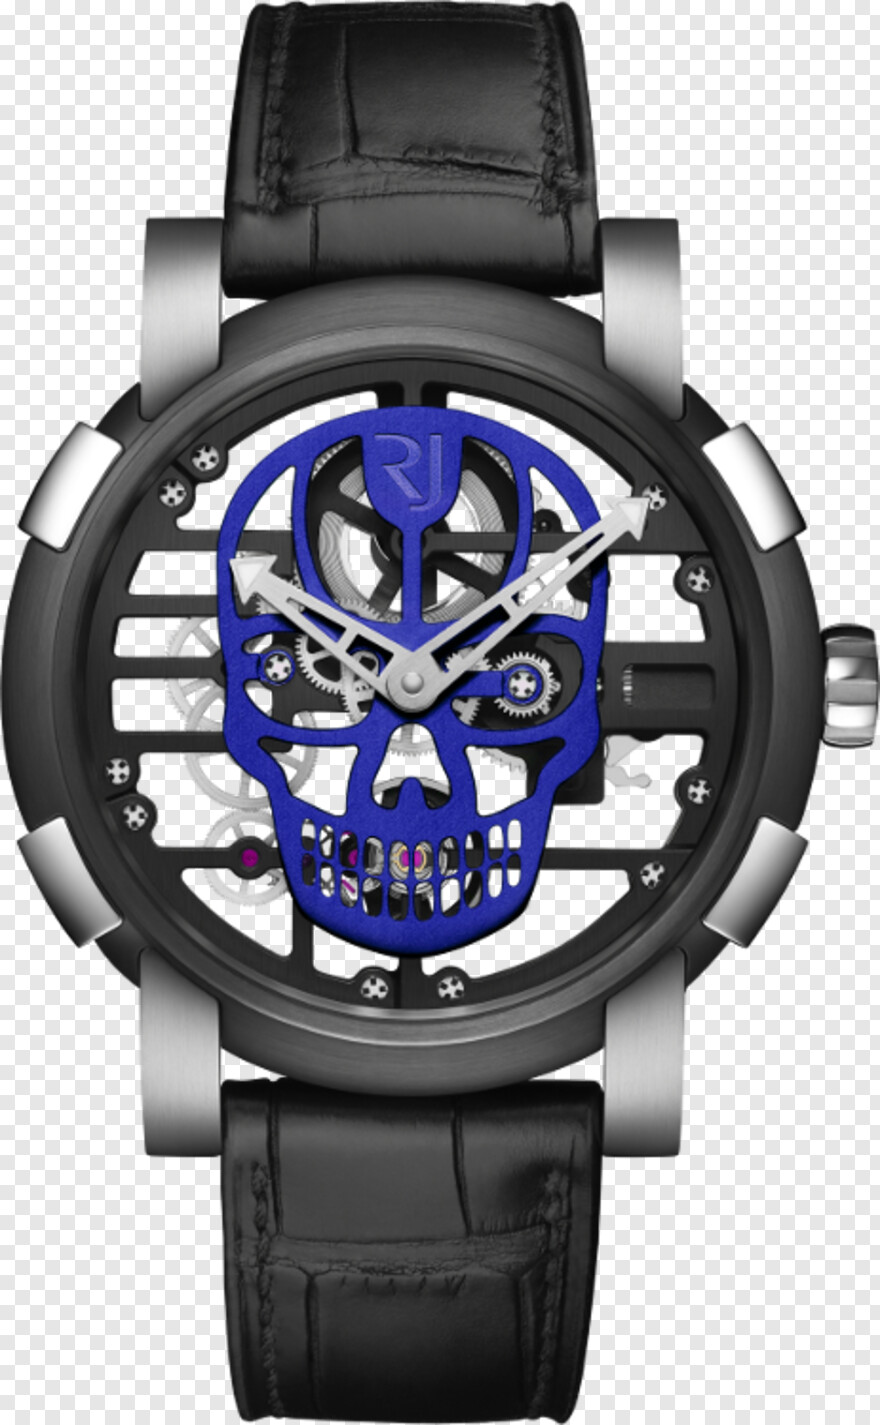  Black Skull, Pirate Skull, Skull Tattoo, Skull Drawing, Skull And Crossbones, Bull Skull